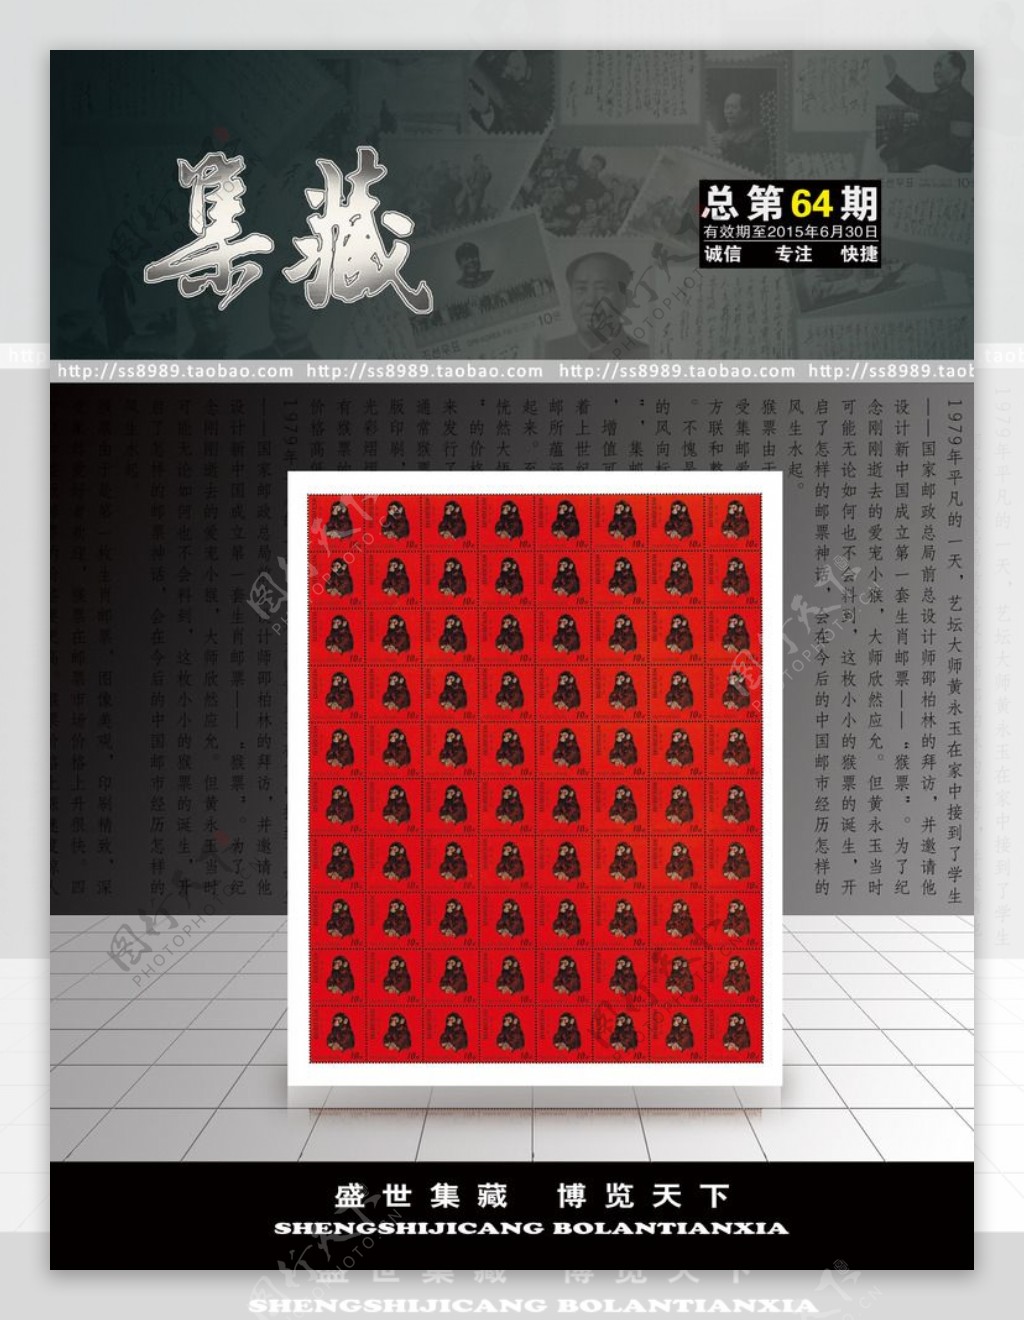 朝鲜猴票画册封面设计图片